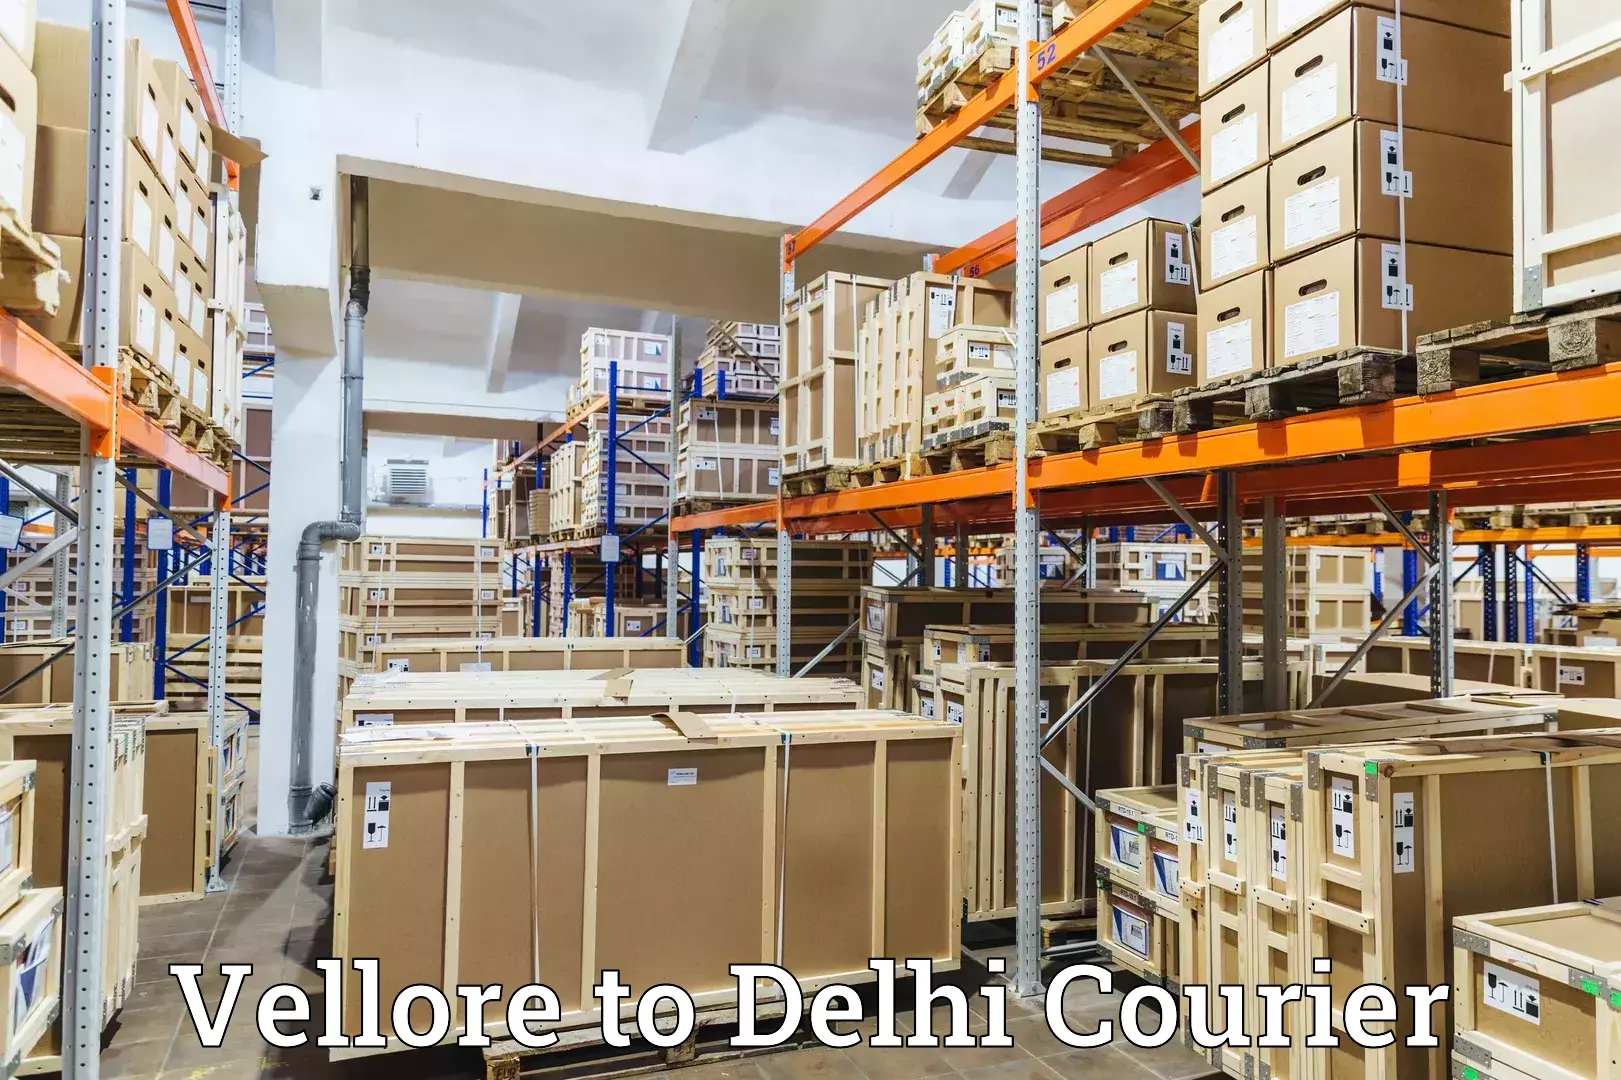 24-hour courier service Vellore to Delhi